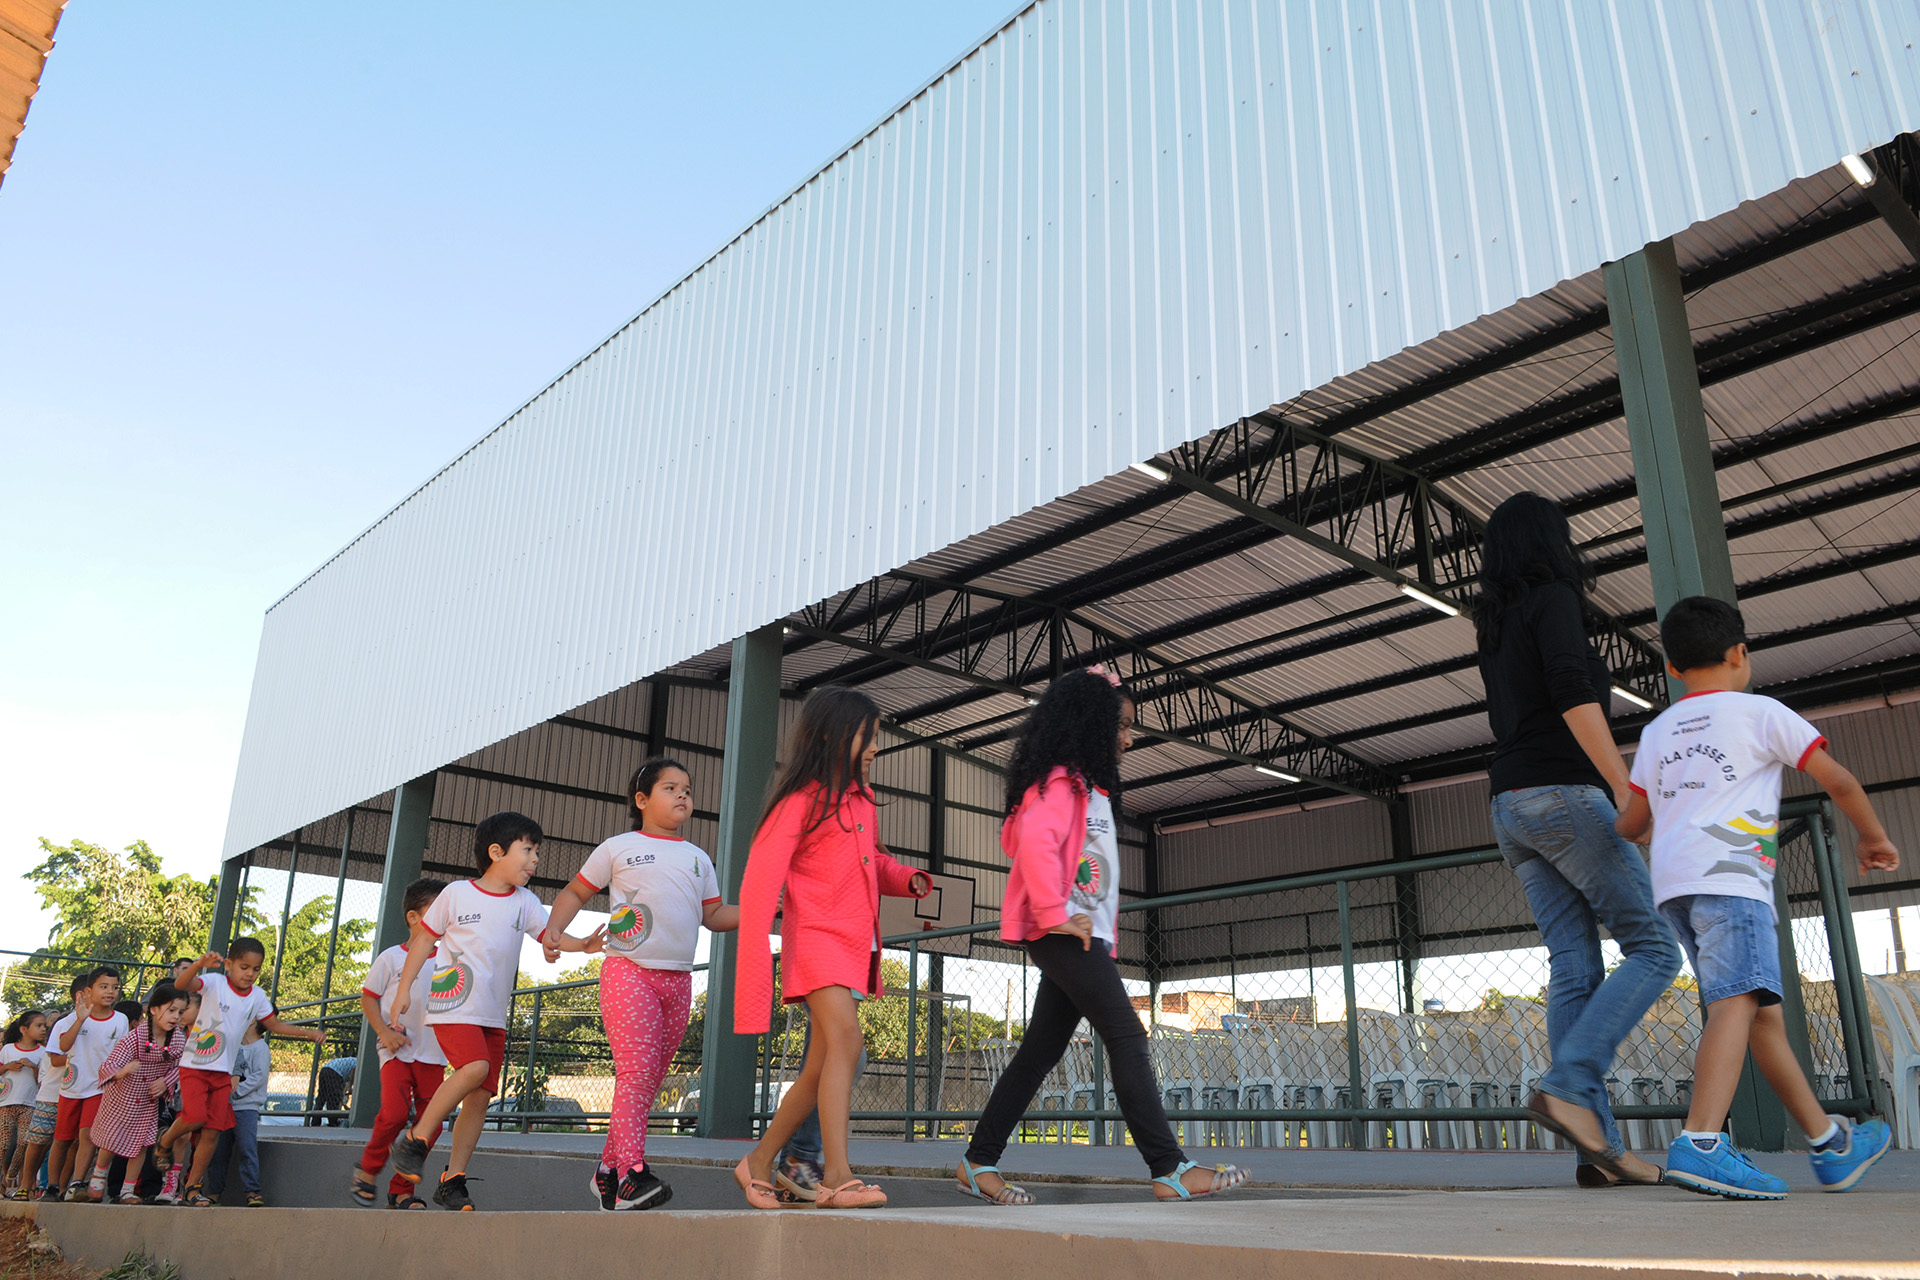 Três escolas da rede pública de ensino de Brazlândia receberam melhorias. Reformas em três instituições foram entregues nesta sexta (8). O governo investiu R$ 750 mil em pintura, instalação de cobertura em quadra de esporte e substituição de piso.